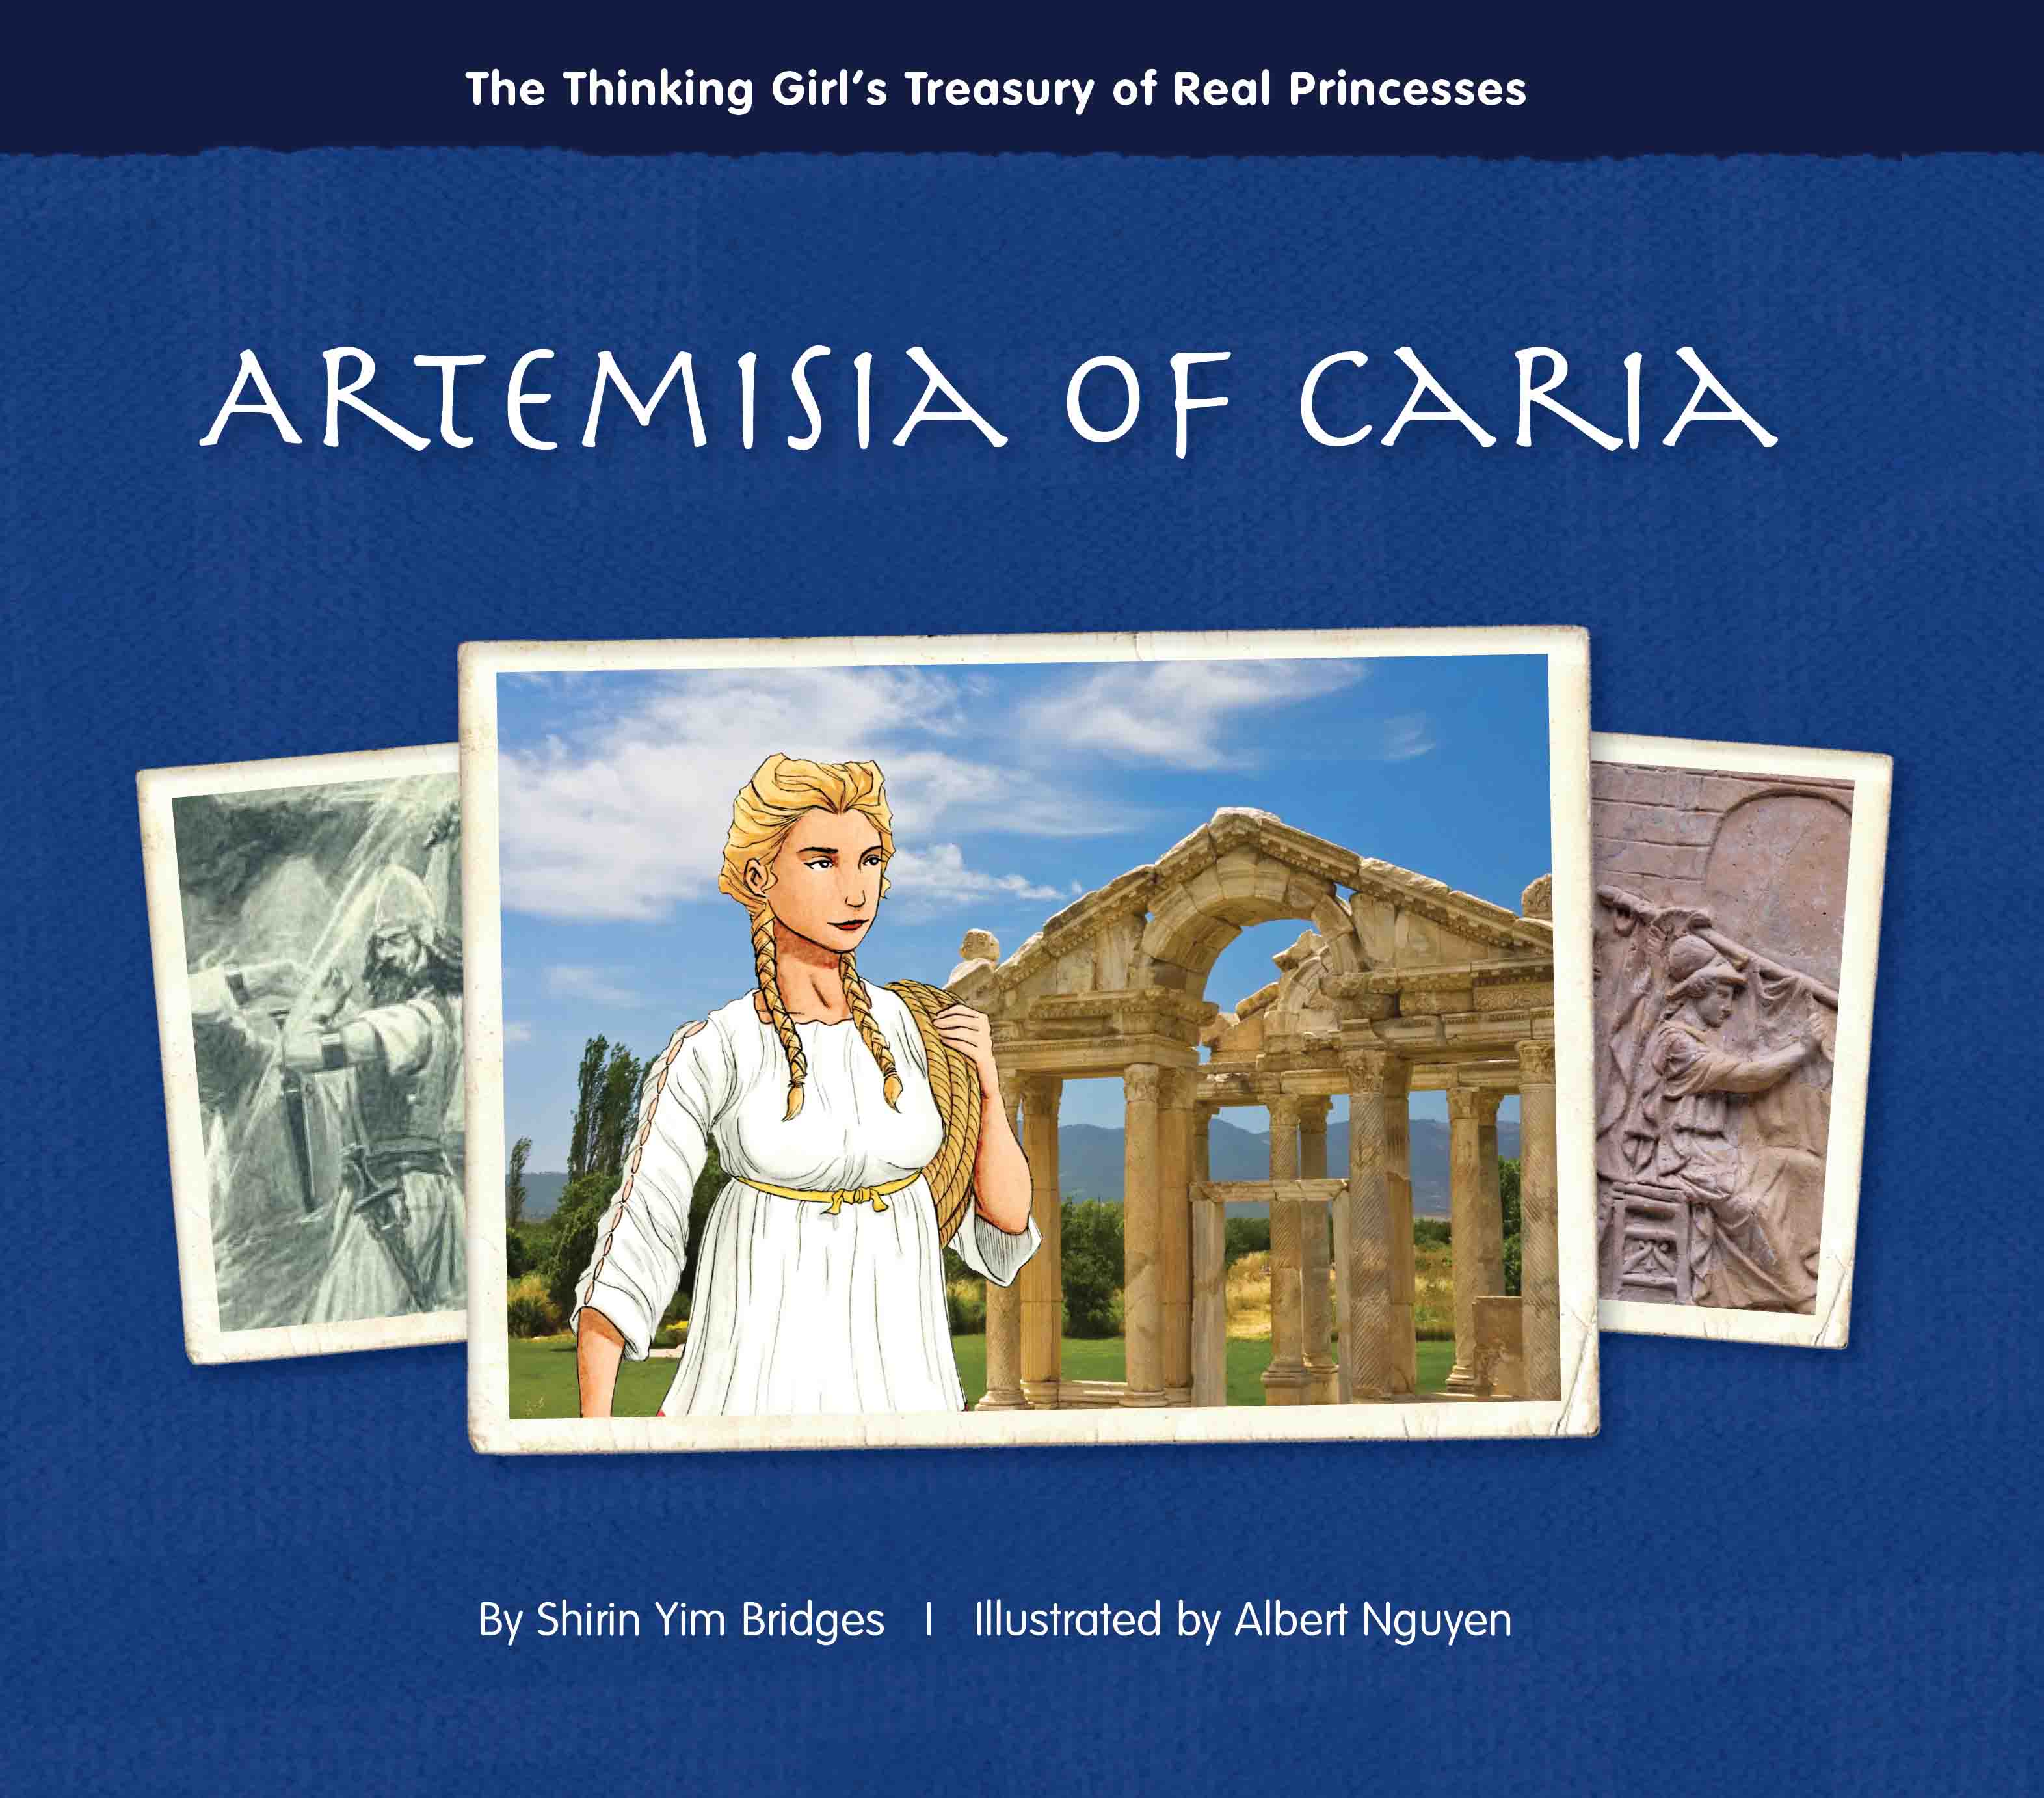 Artemisia of Carria